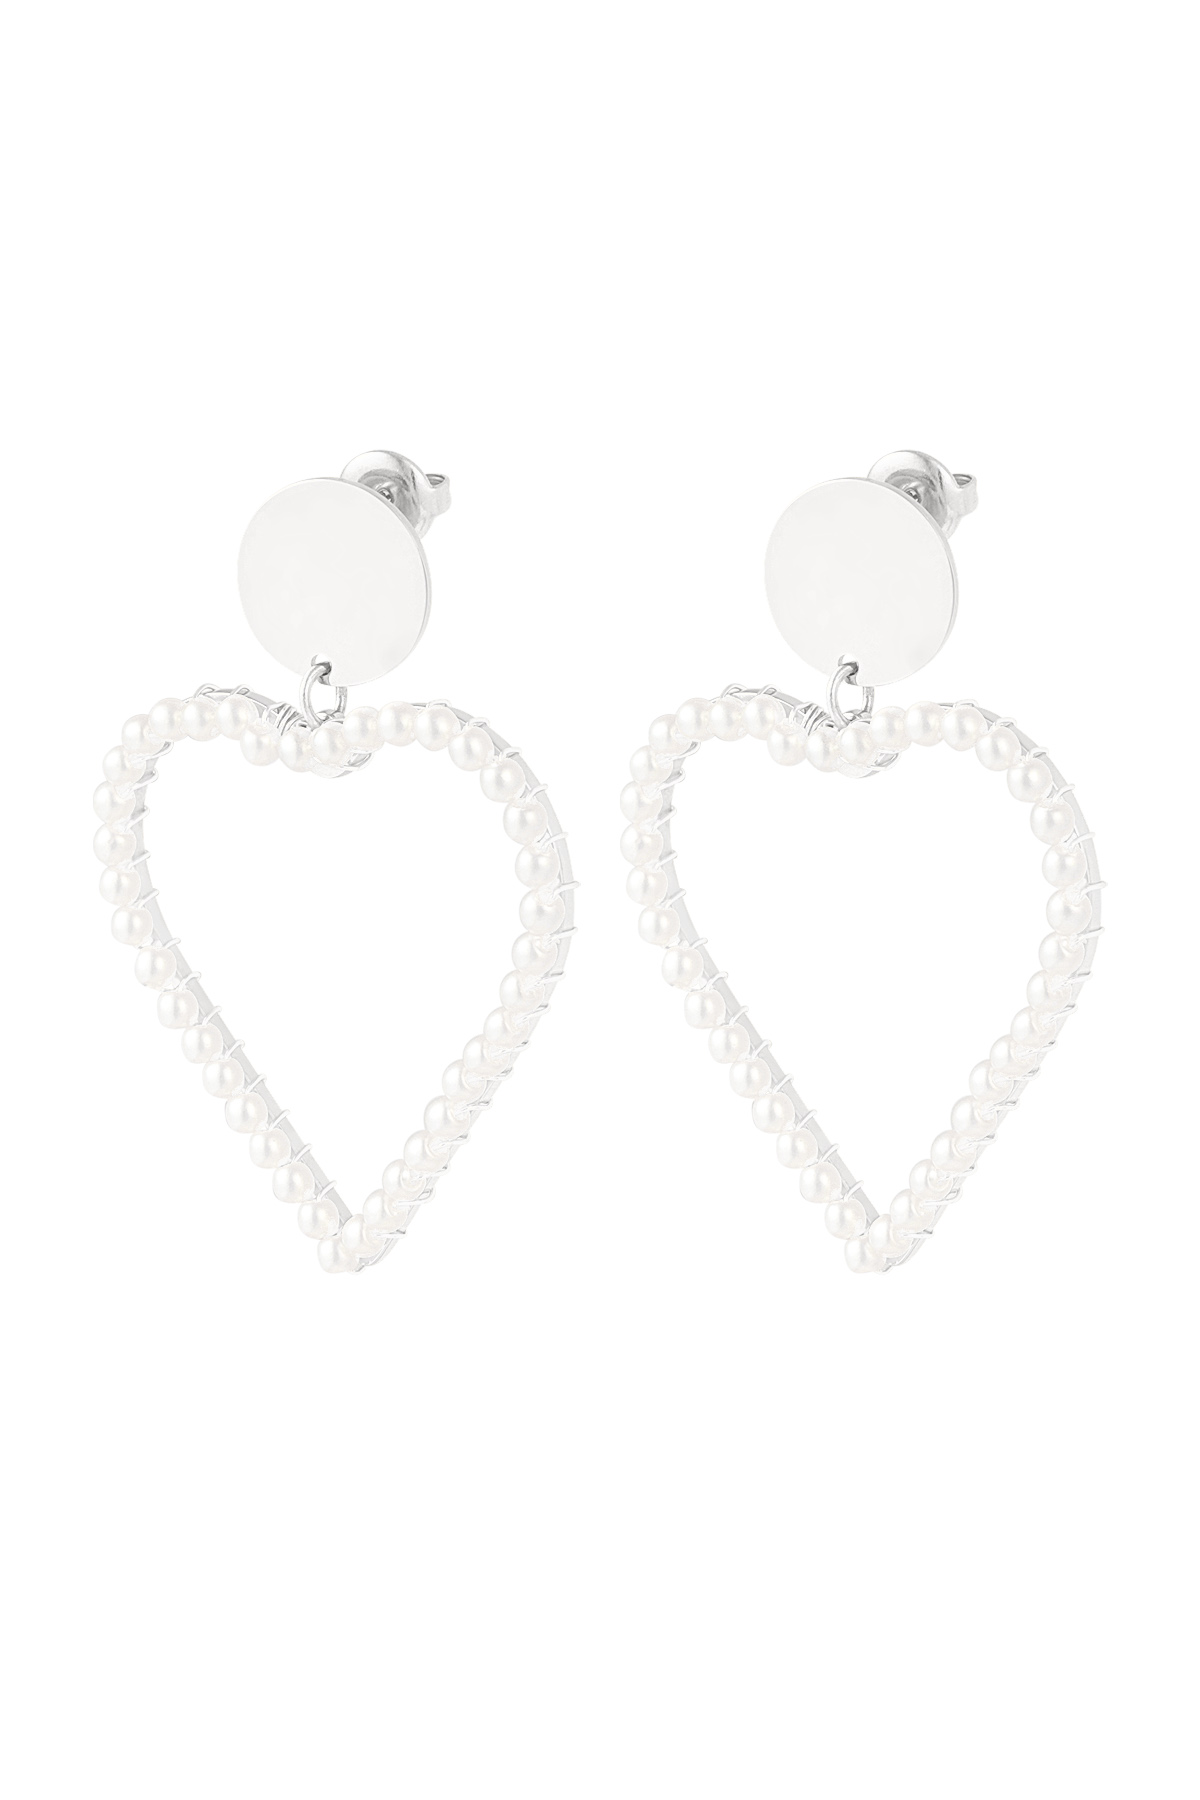 Ohrring mit Perle in Herzform - Silber 